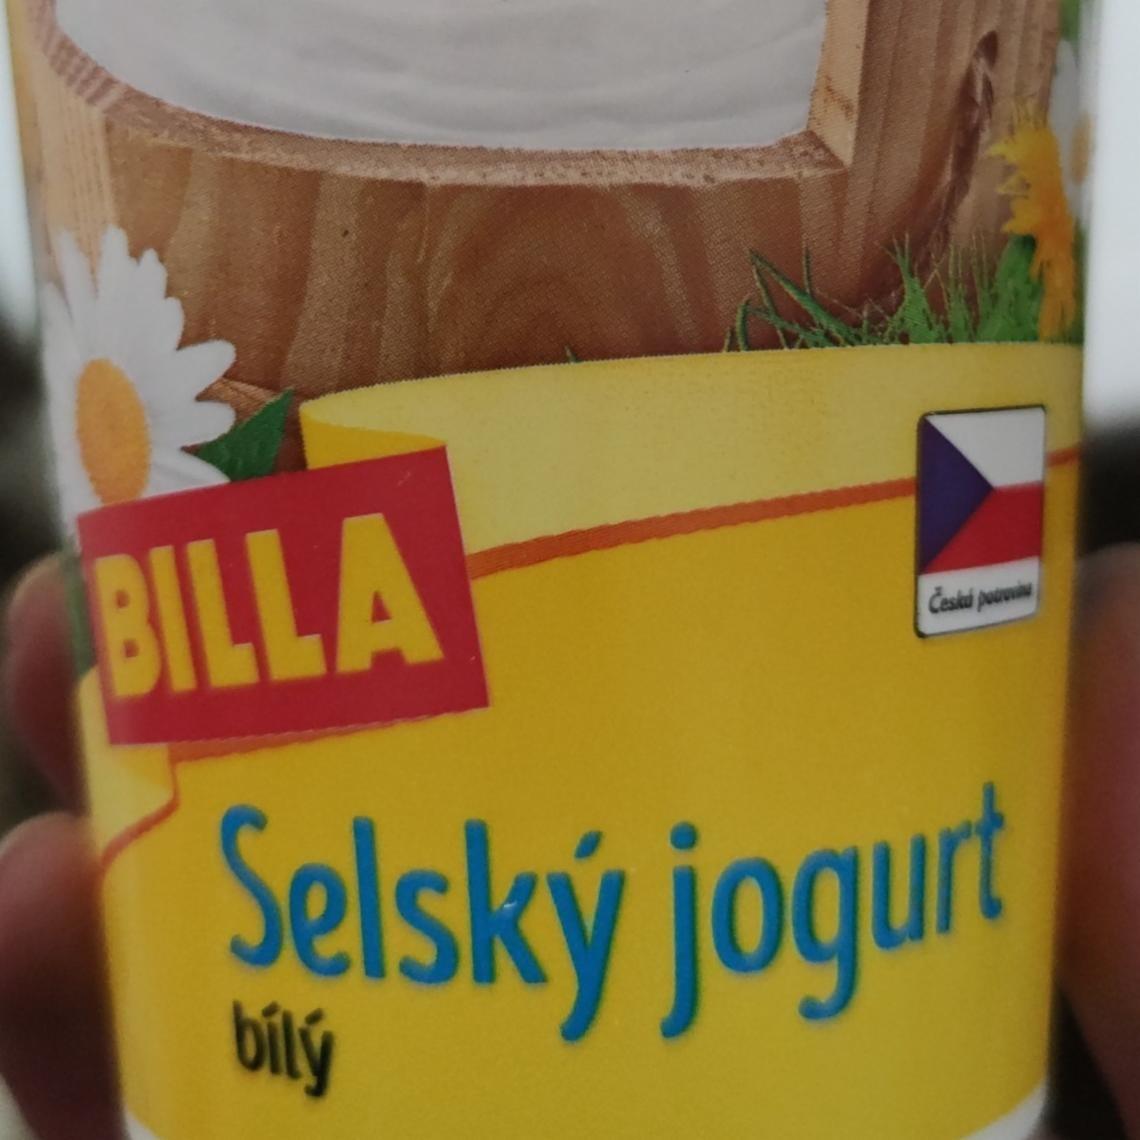 Фото - Йогурт білий 3.6% Selsky Jogurt Billa